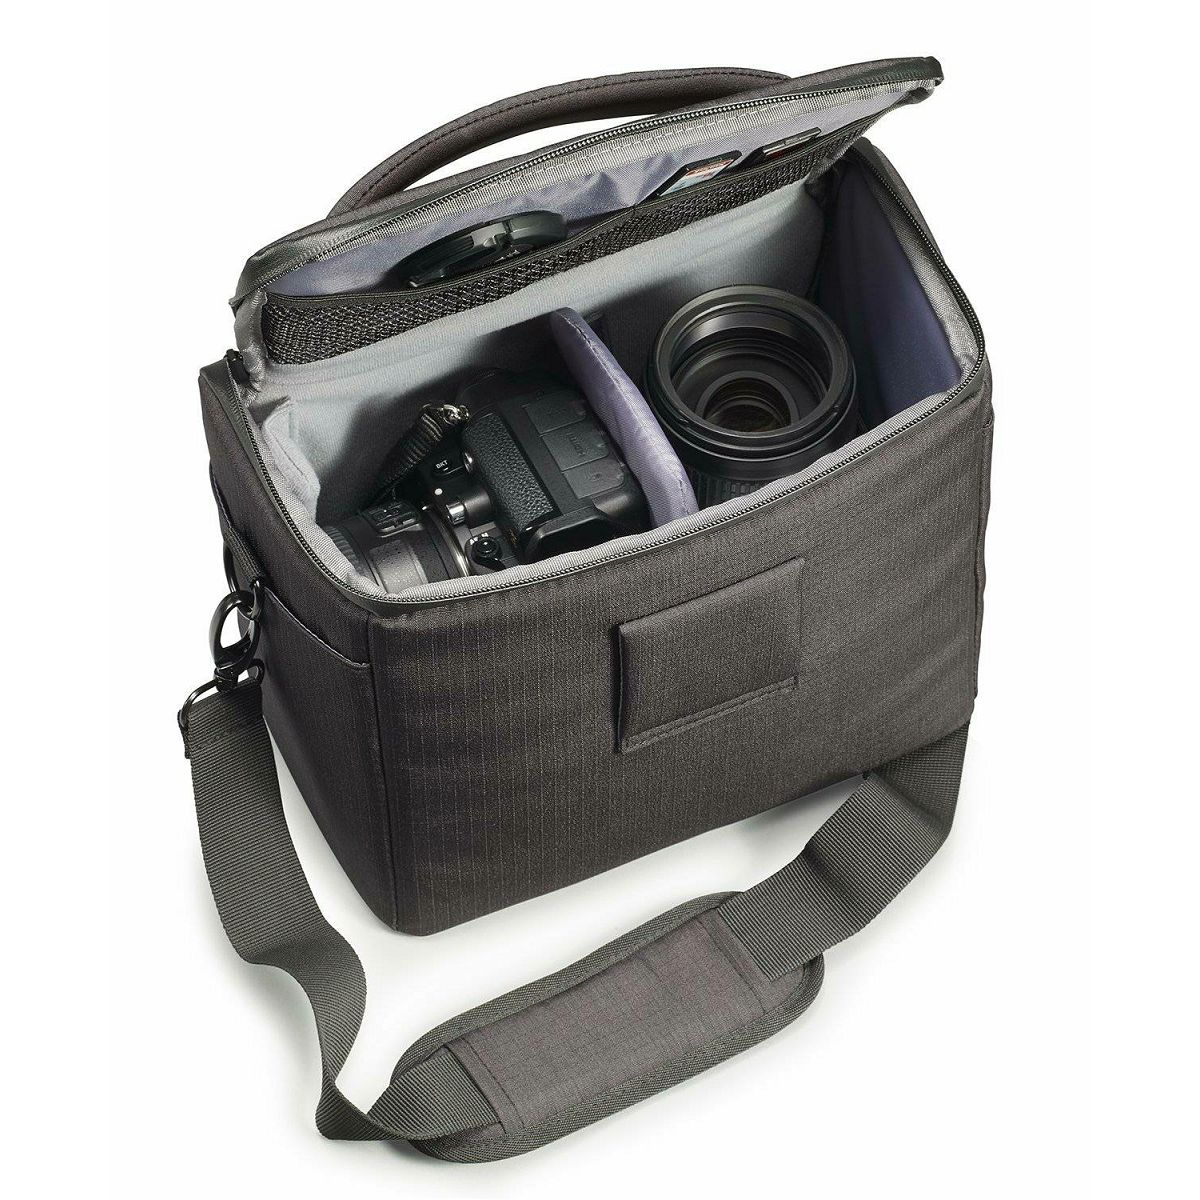 Cullmann Malaga Maxima 200 Brown smeđa torba za DSLR fotoaparat i foto opremu 230x180x130mm 395g (90401)